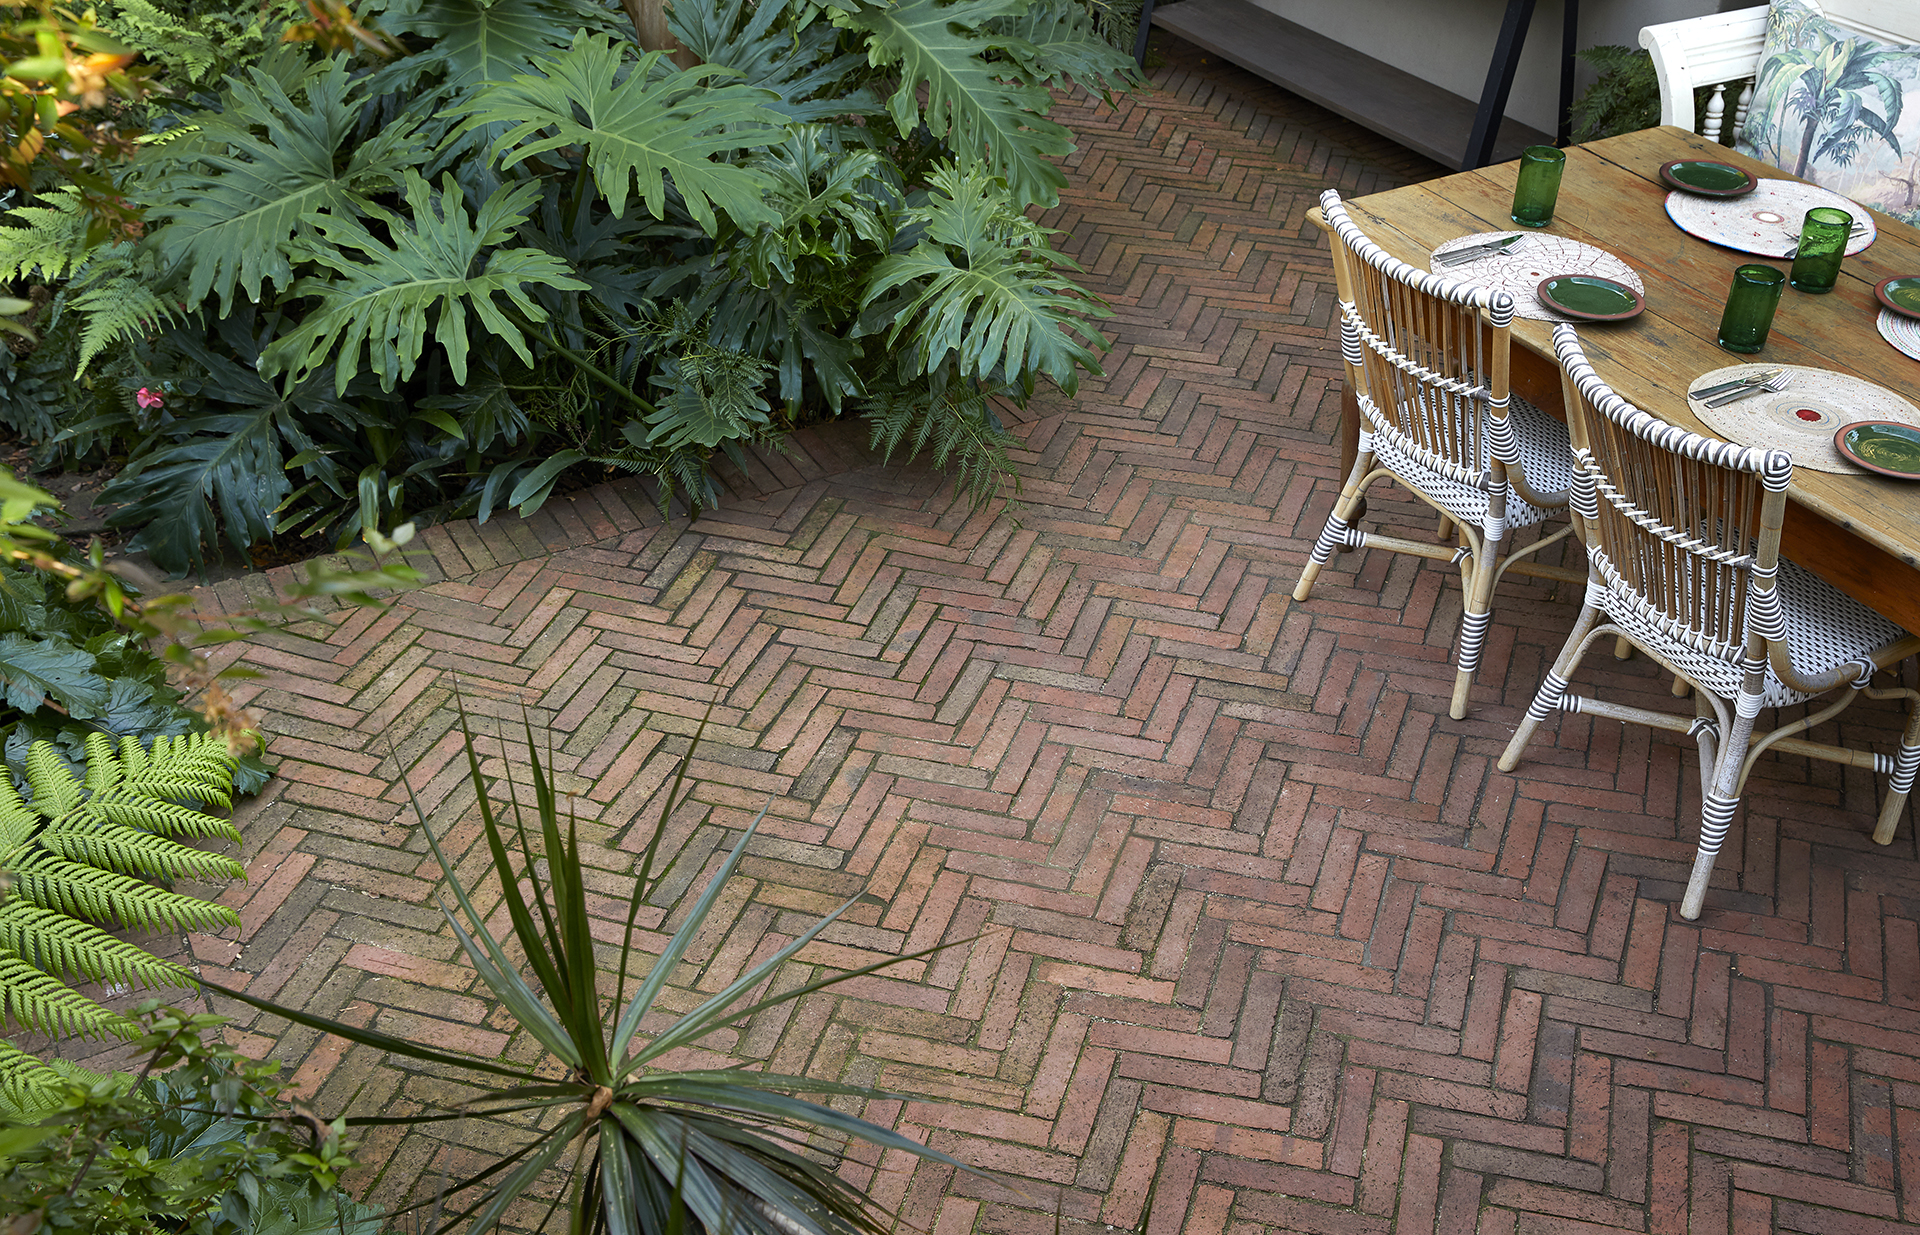 Brick herringbone-patterned patio floor by Young Garden Design